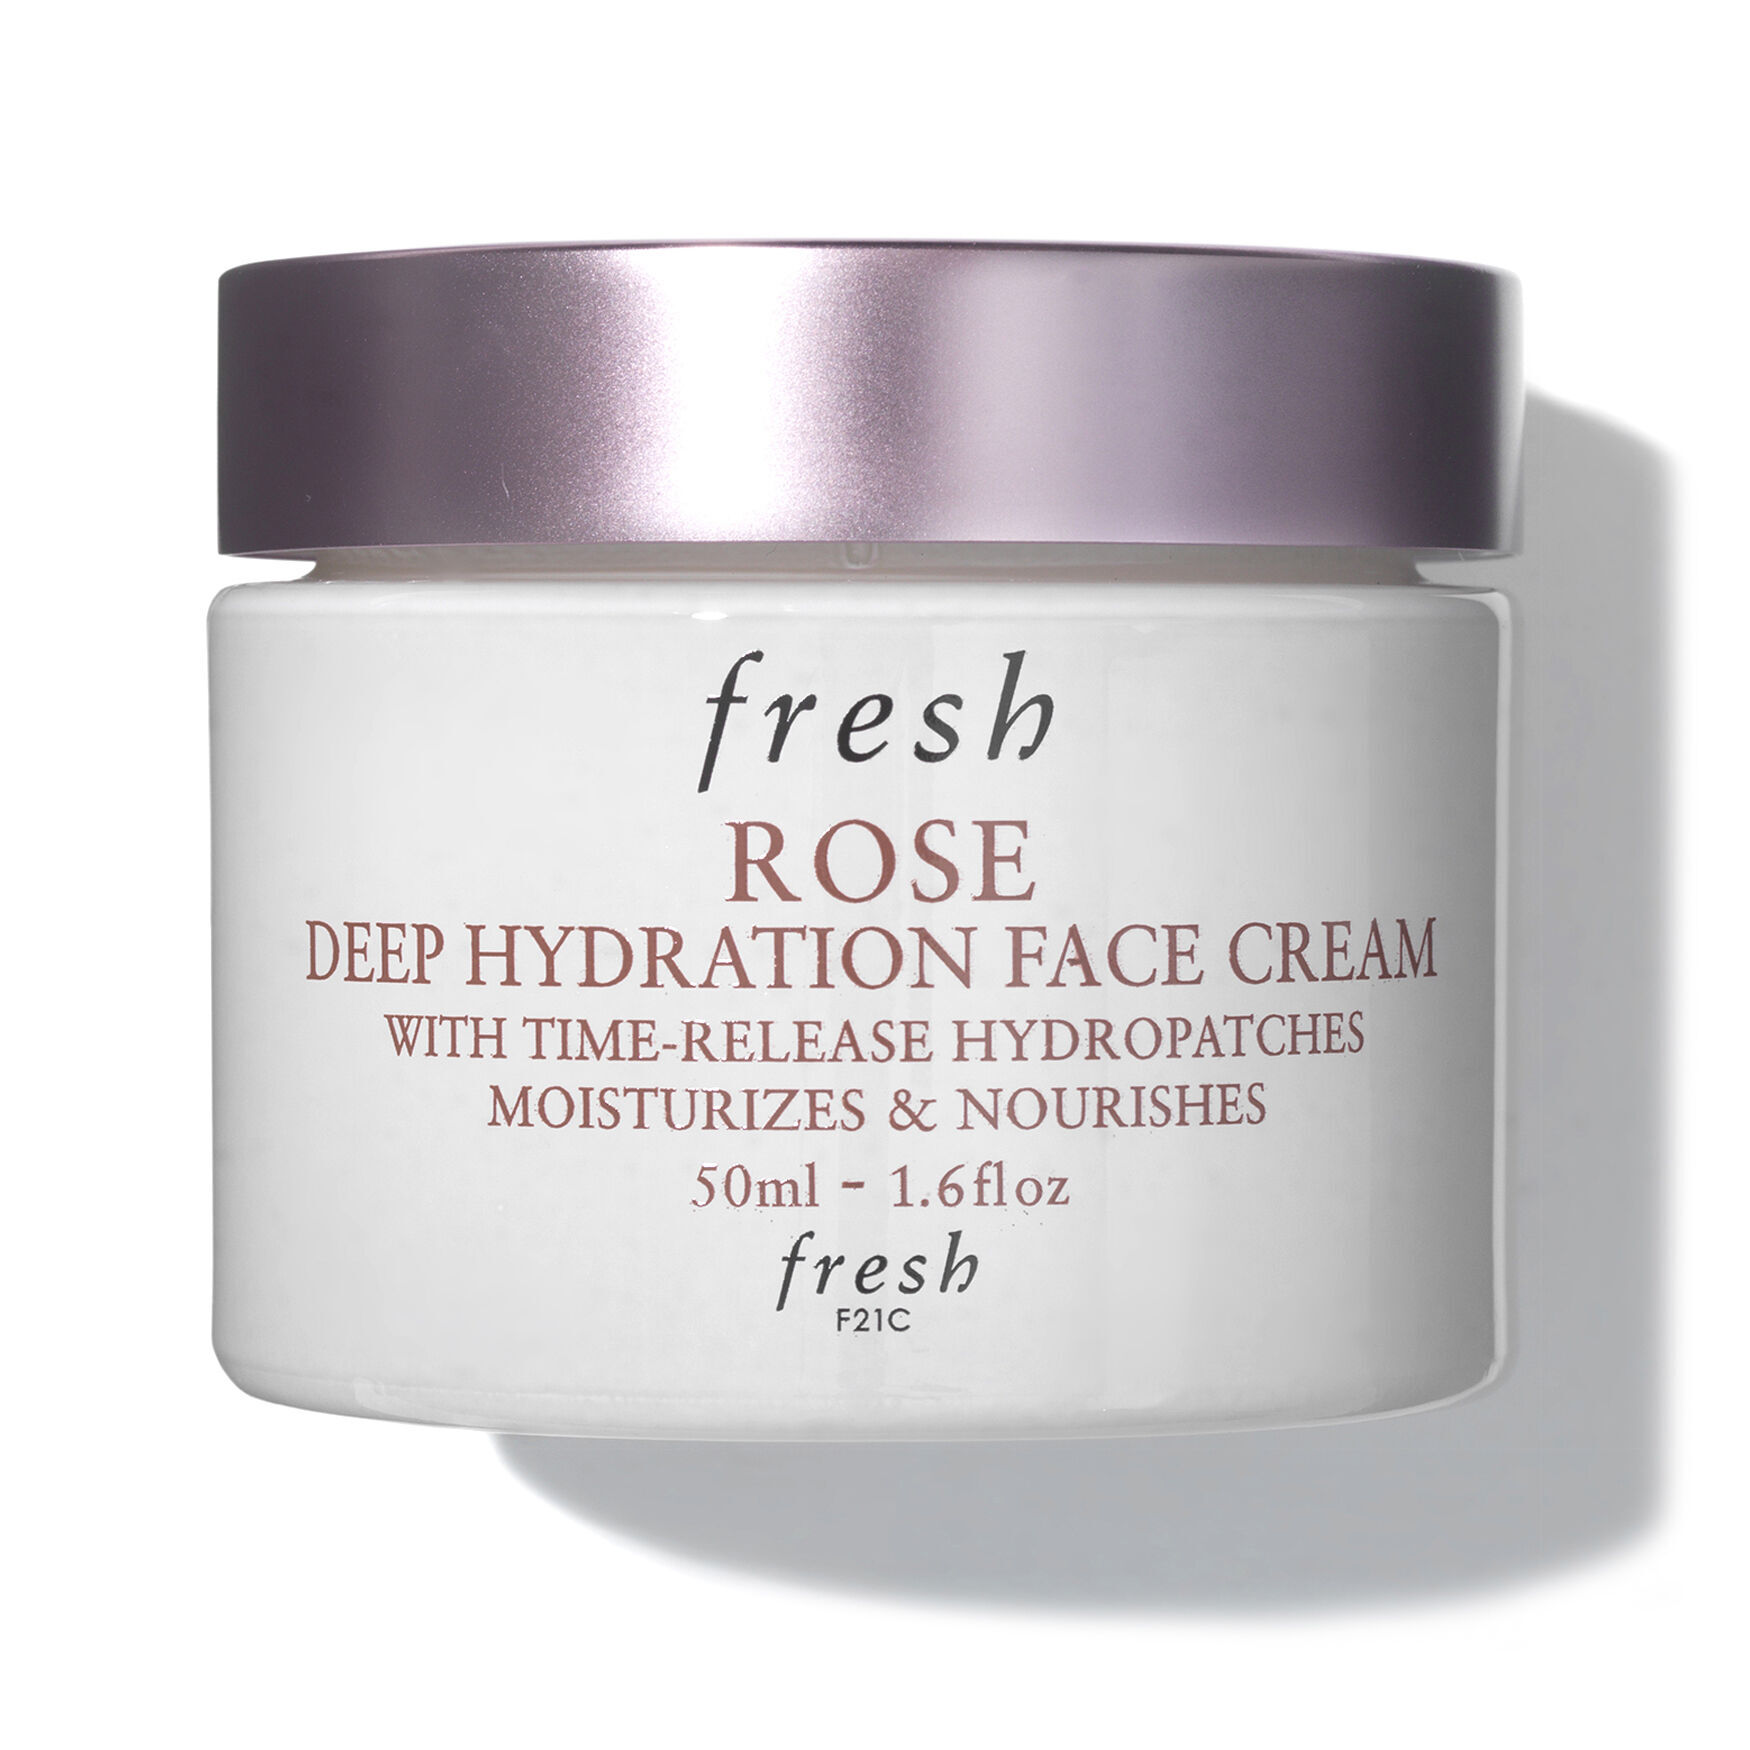 Fresh - Rose Deep Hydration Face Cream by Fresh